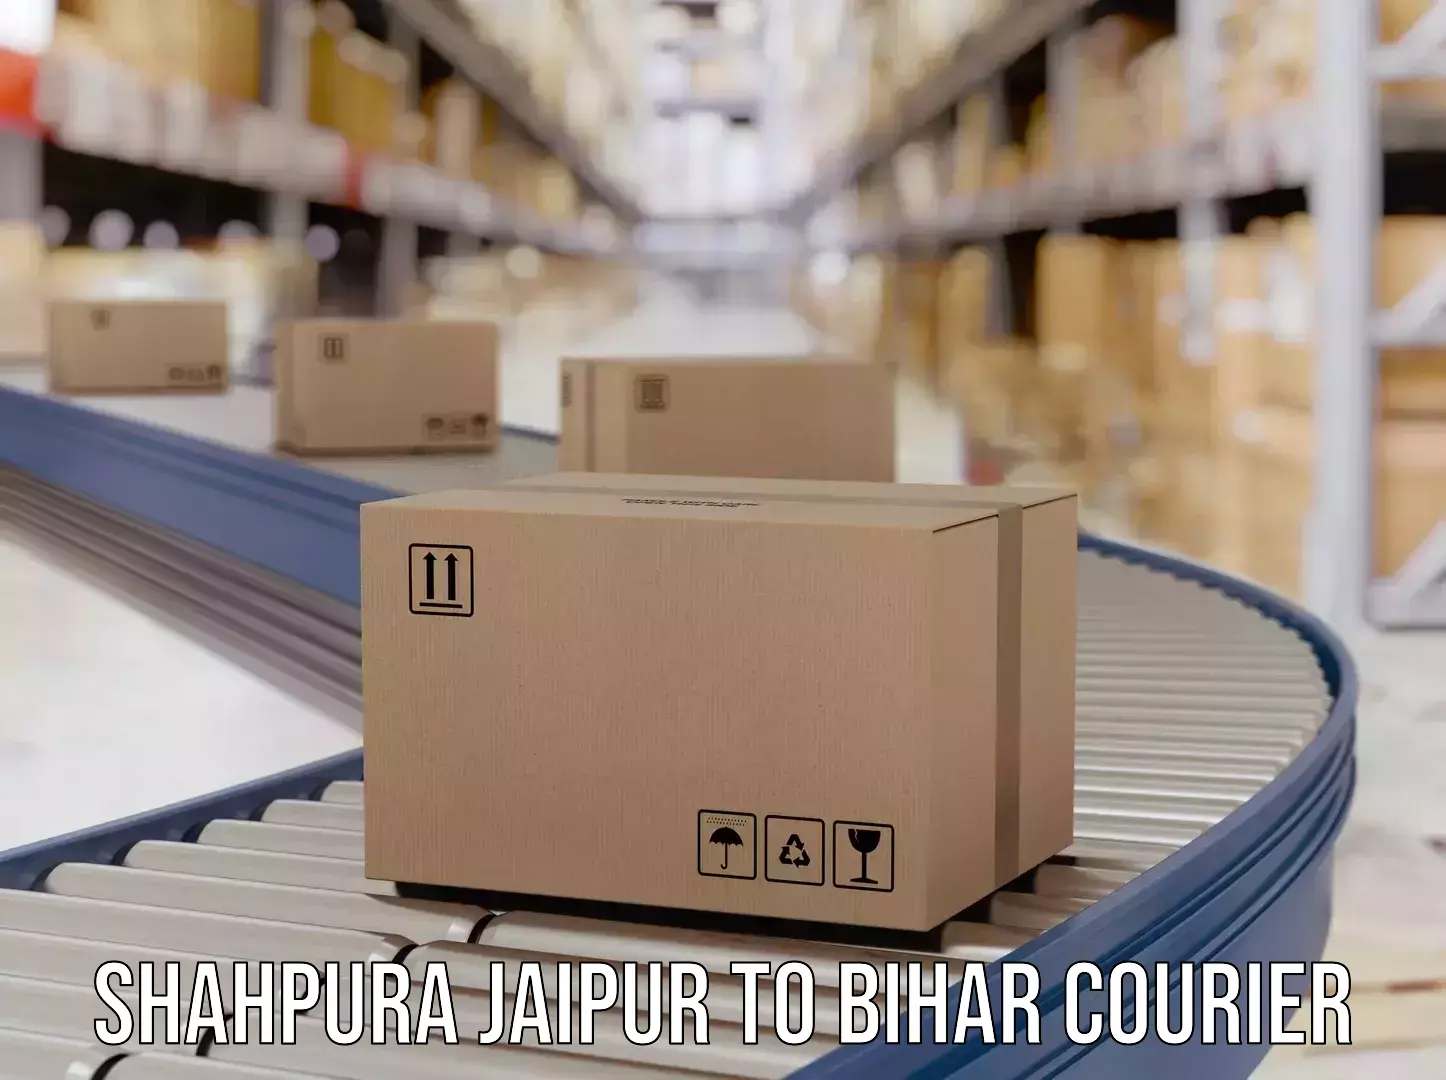 Urban courier service Shahpura Jaipur to Madhepura